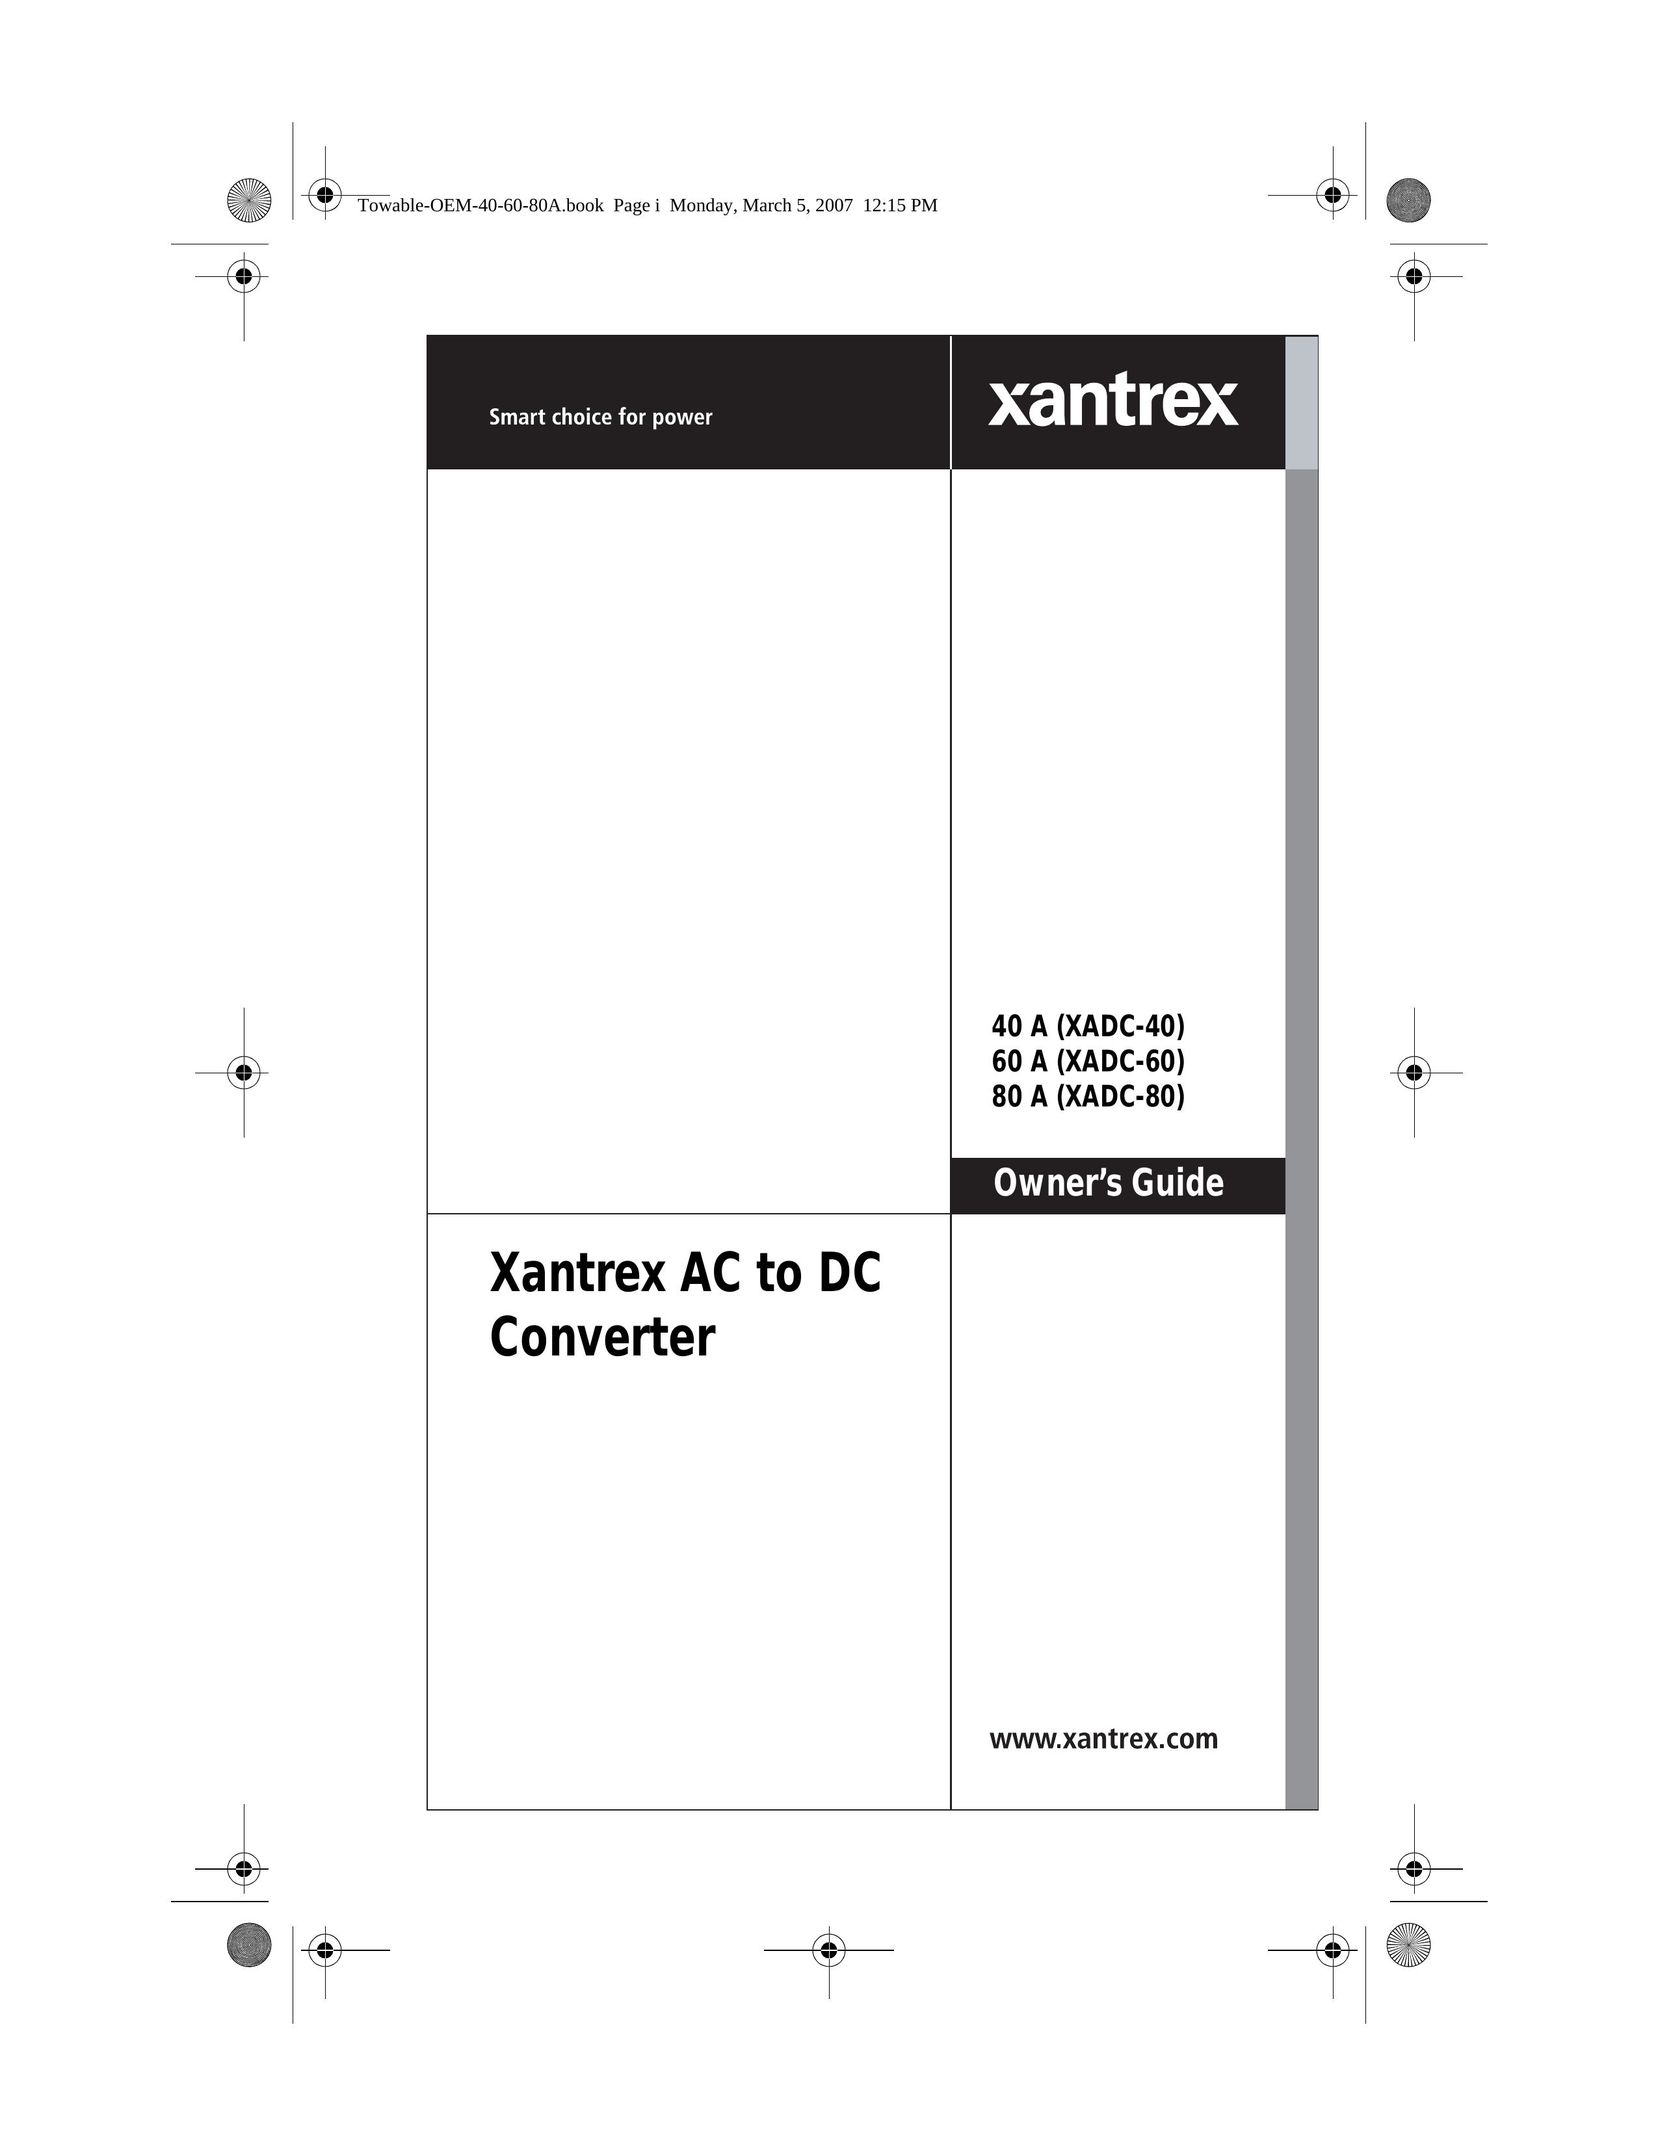 Xantrex Technology 60 A (XADC-60) Power Supply User Manual